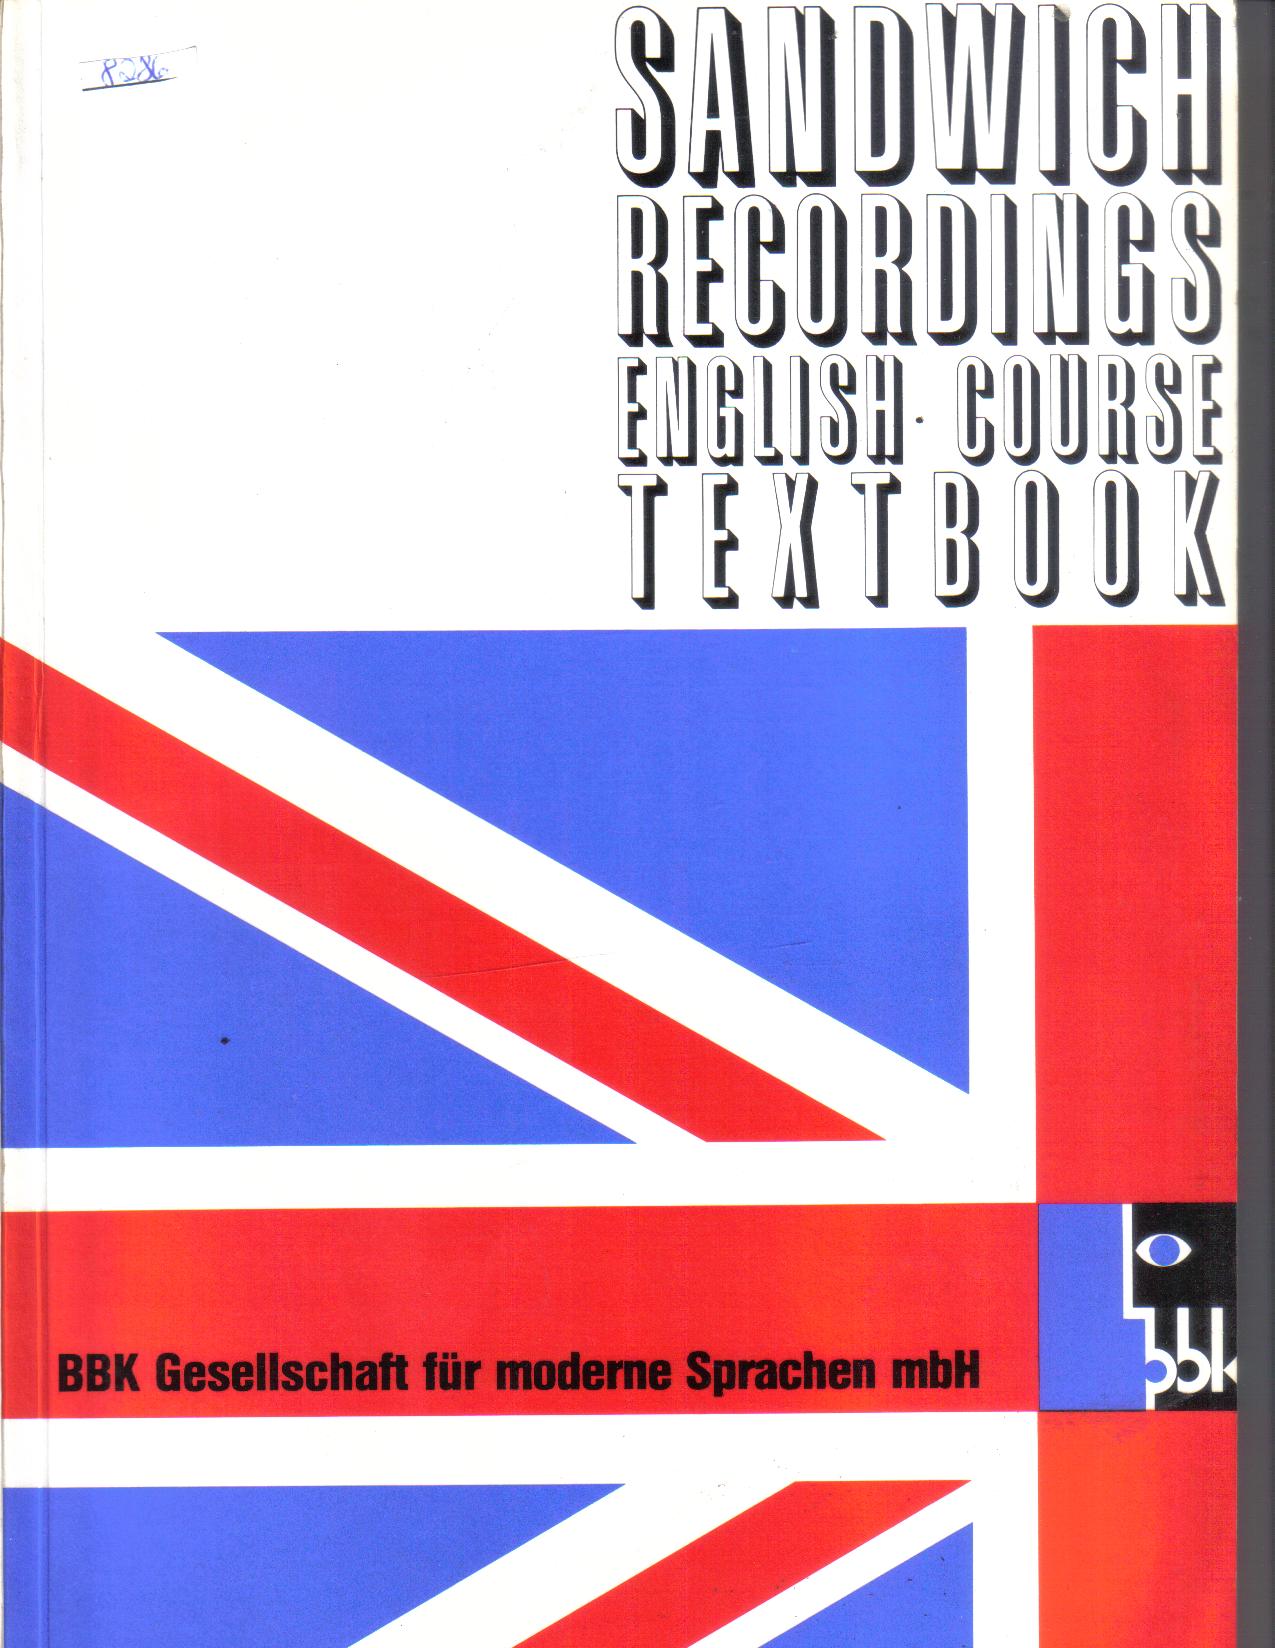 SANDWICH RECORDINGS ENGLISH CURSE TEXTBOOKBBK Gesellschaft fuer moderne Sprachen